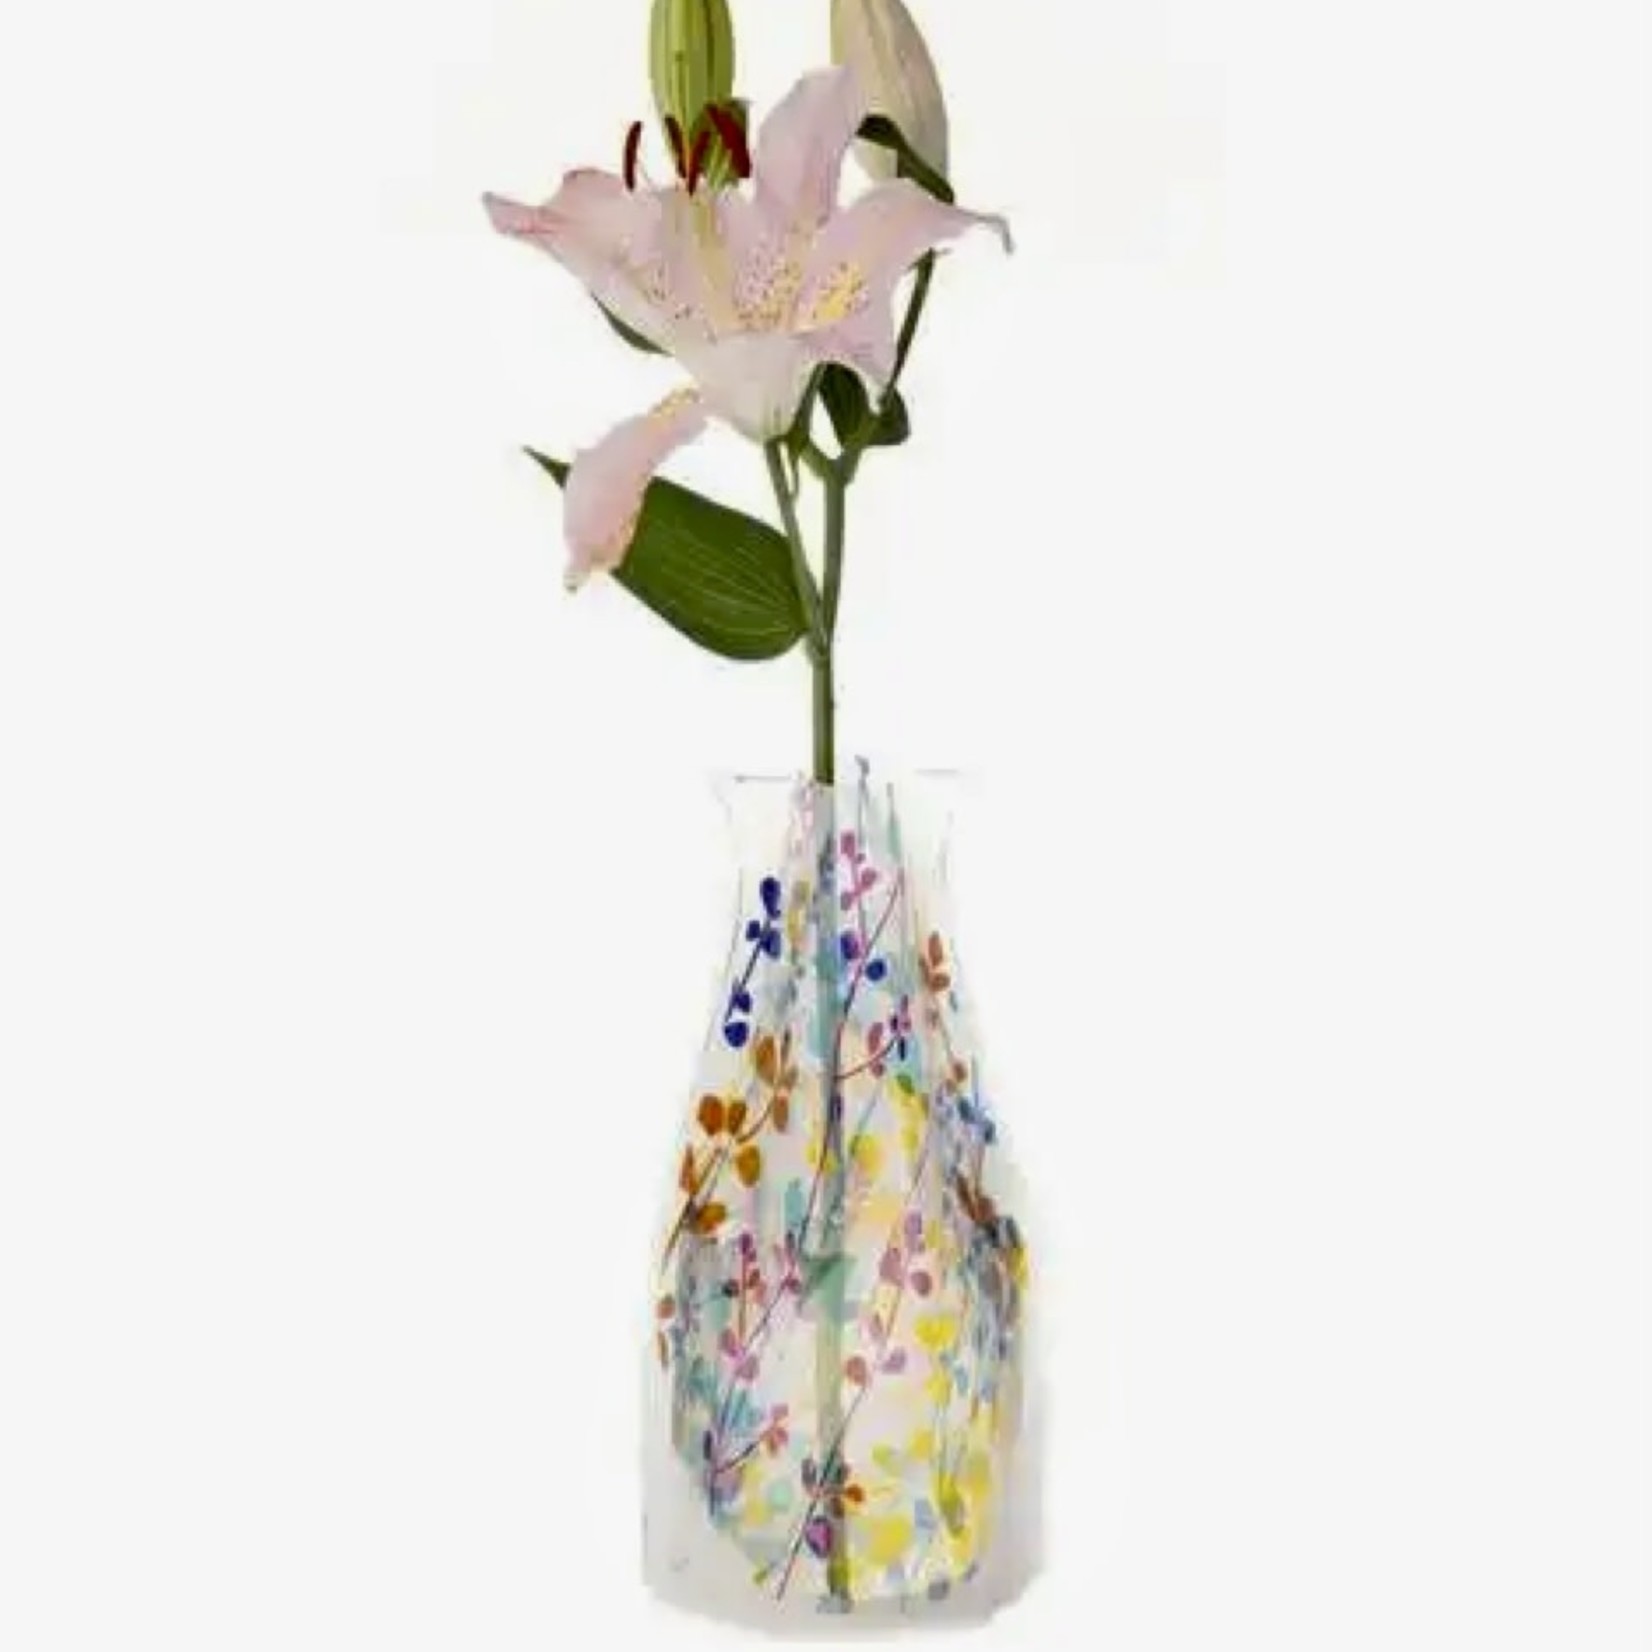 Lima Bean Expandable Vase - Foliage